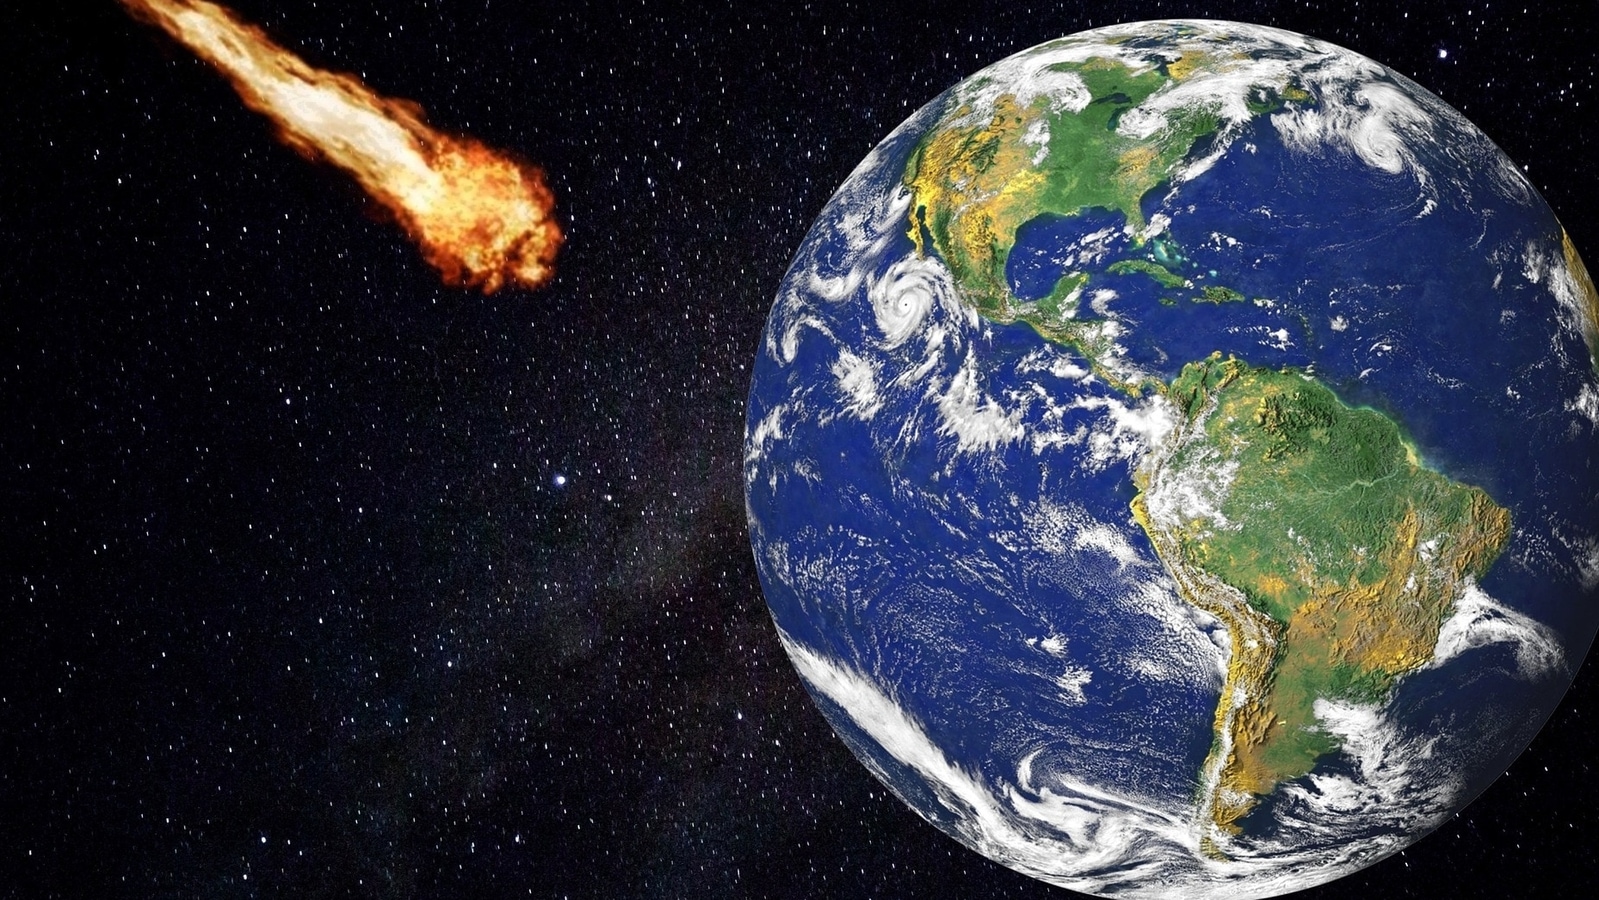 Hoy, el asteroide pasó cerca de la Tierra